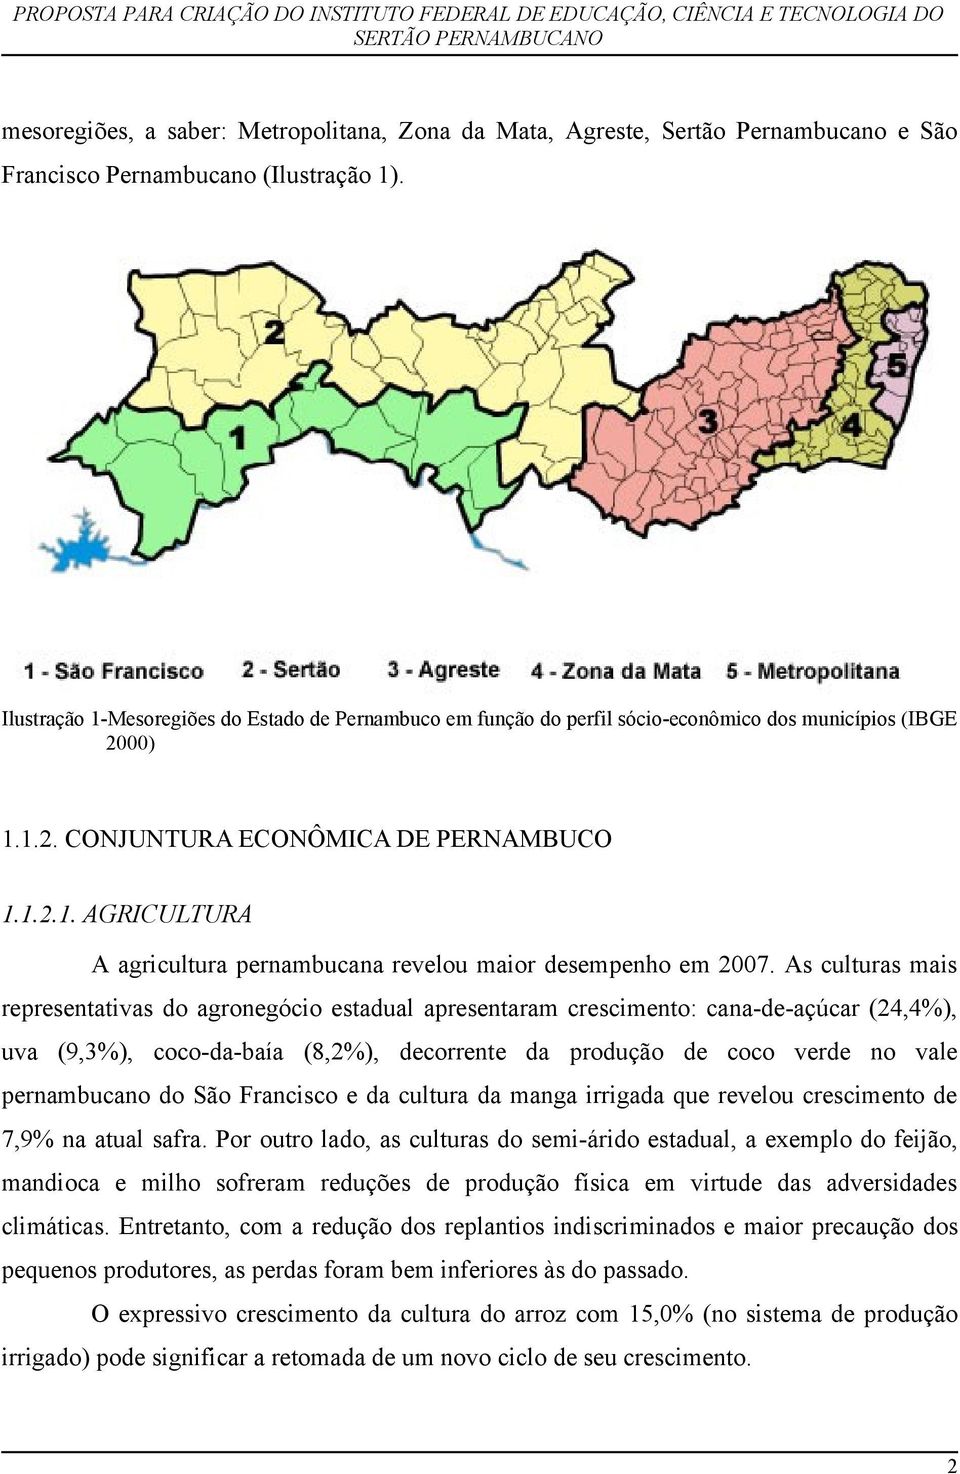 As culturas mais representativas do agronegócio estadual apresentaram crescimento: cana-de-açúcar (24,4%), uva (9,3%), coco-da-baía (8,2%), decorrente da produção de coco verde no vale pernambucano